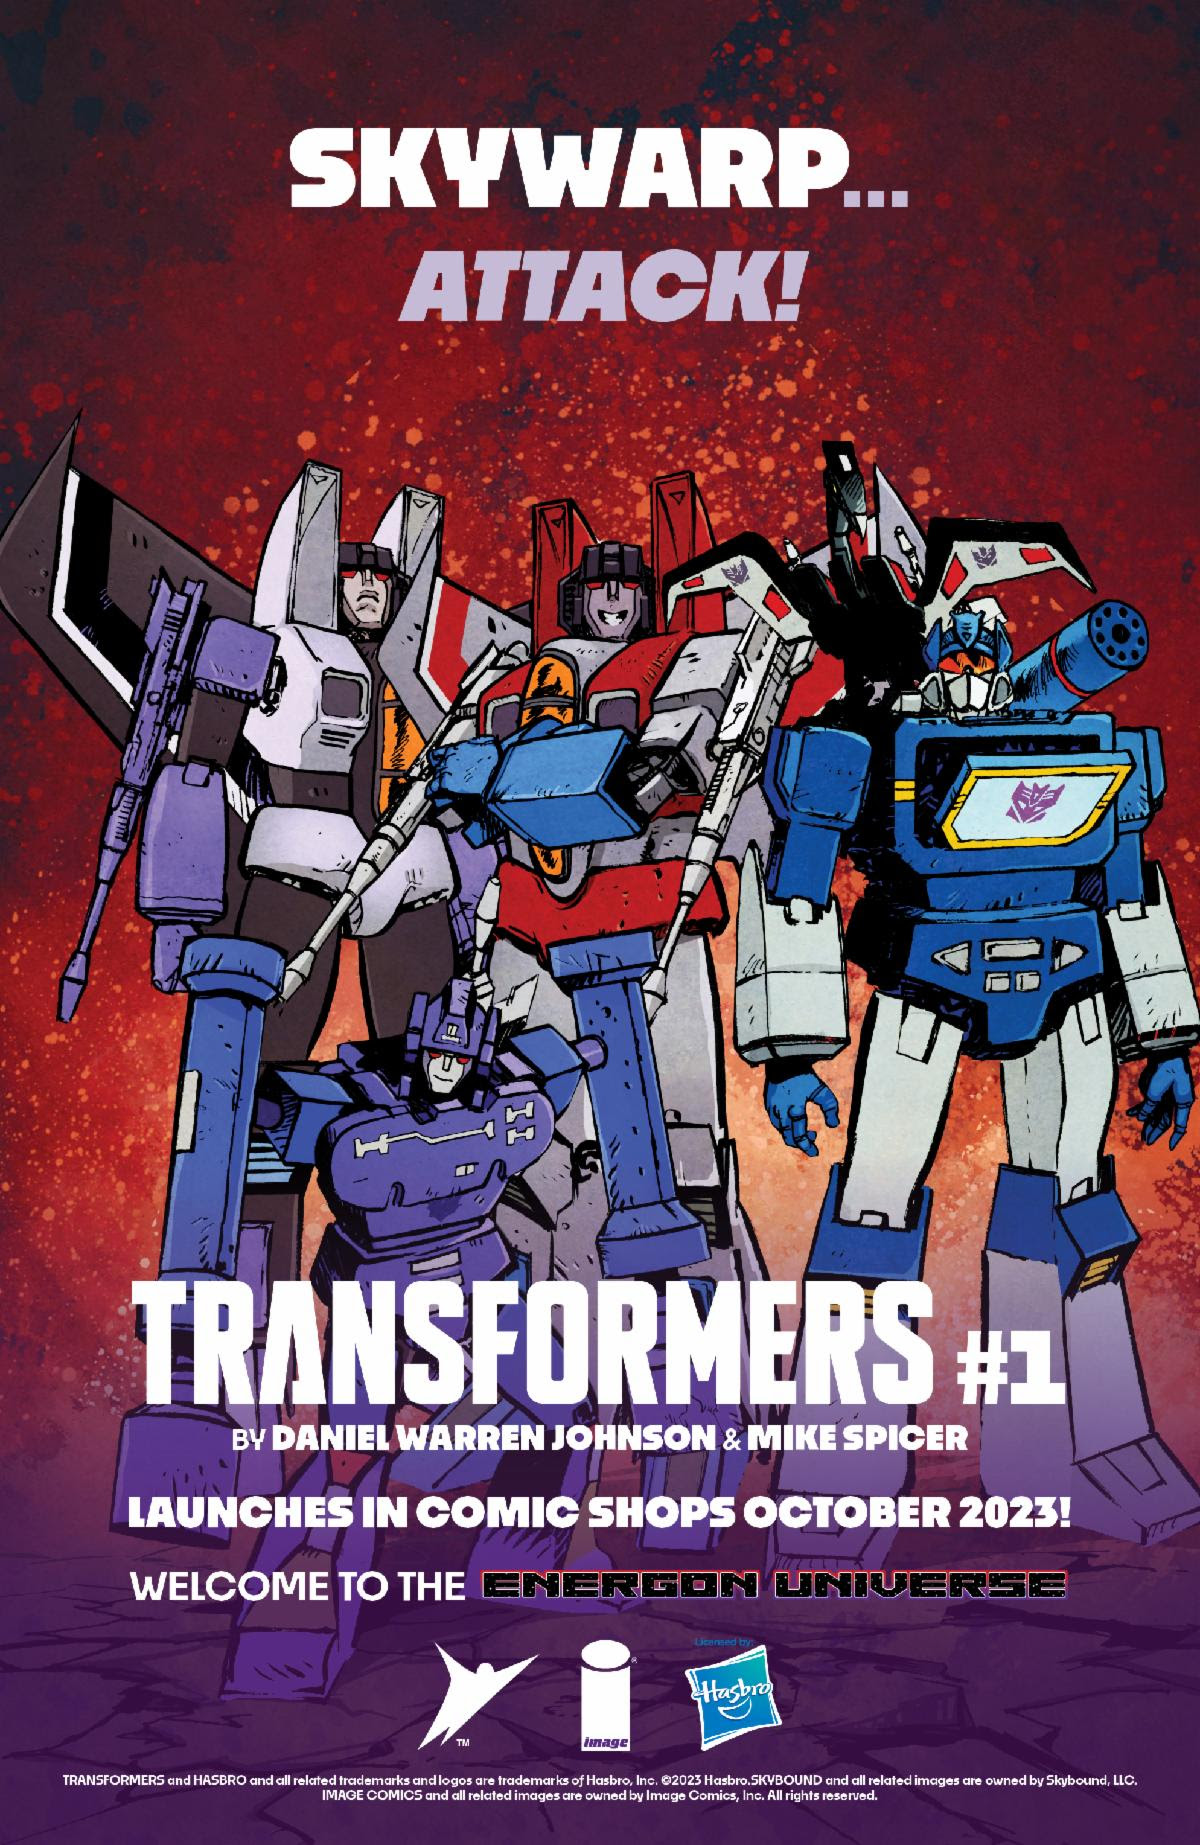 Werbekunst für Transformers #1.